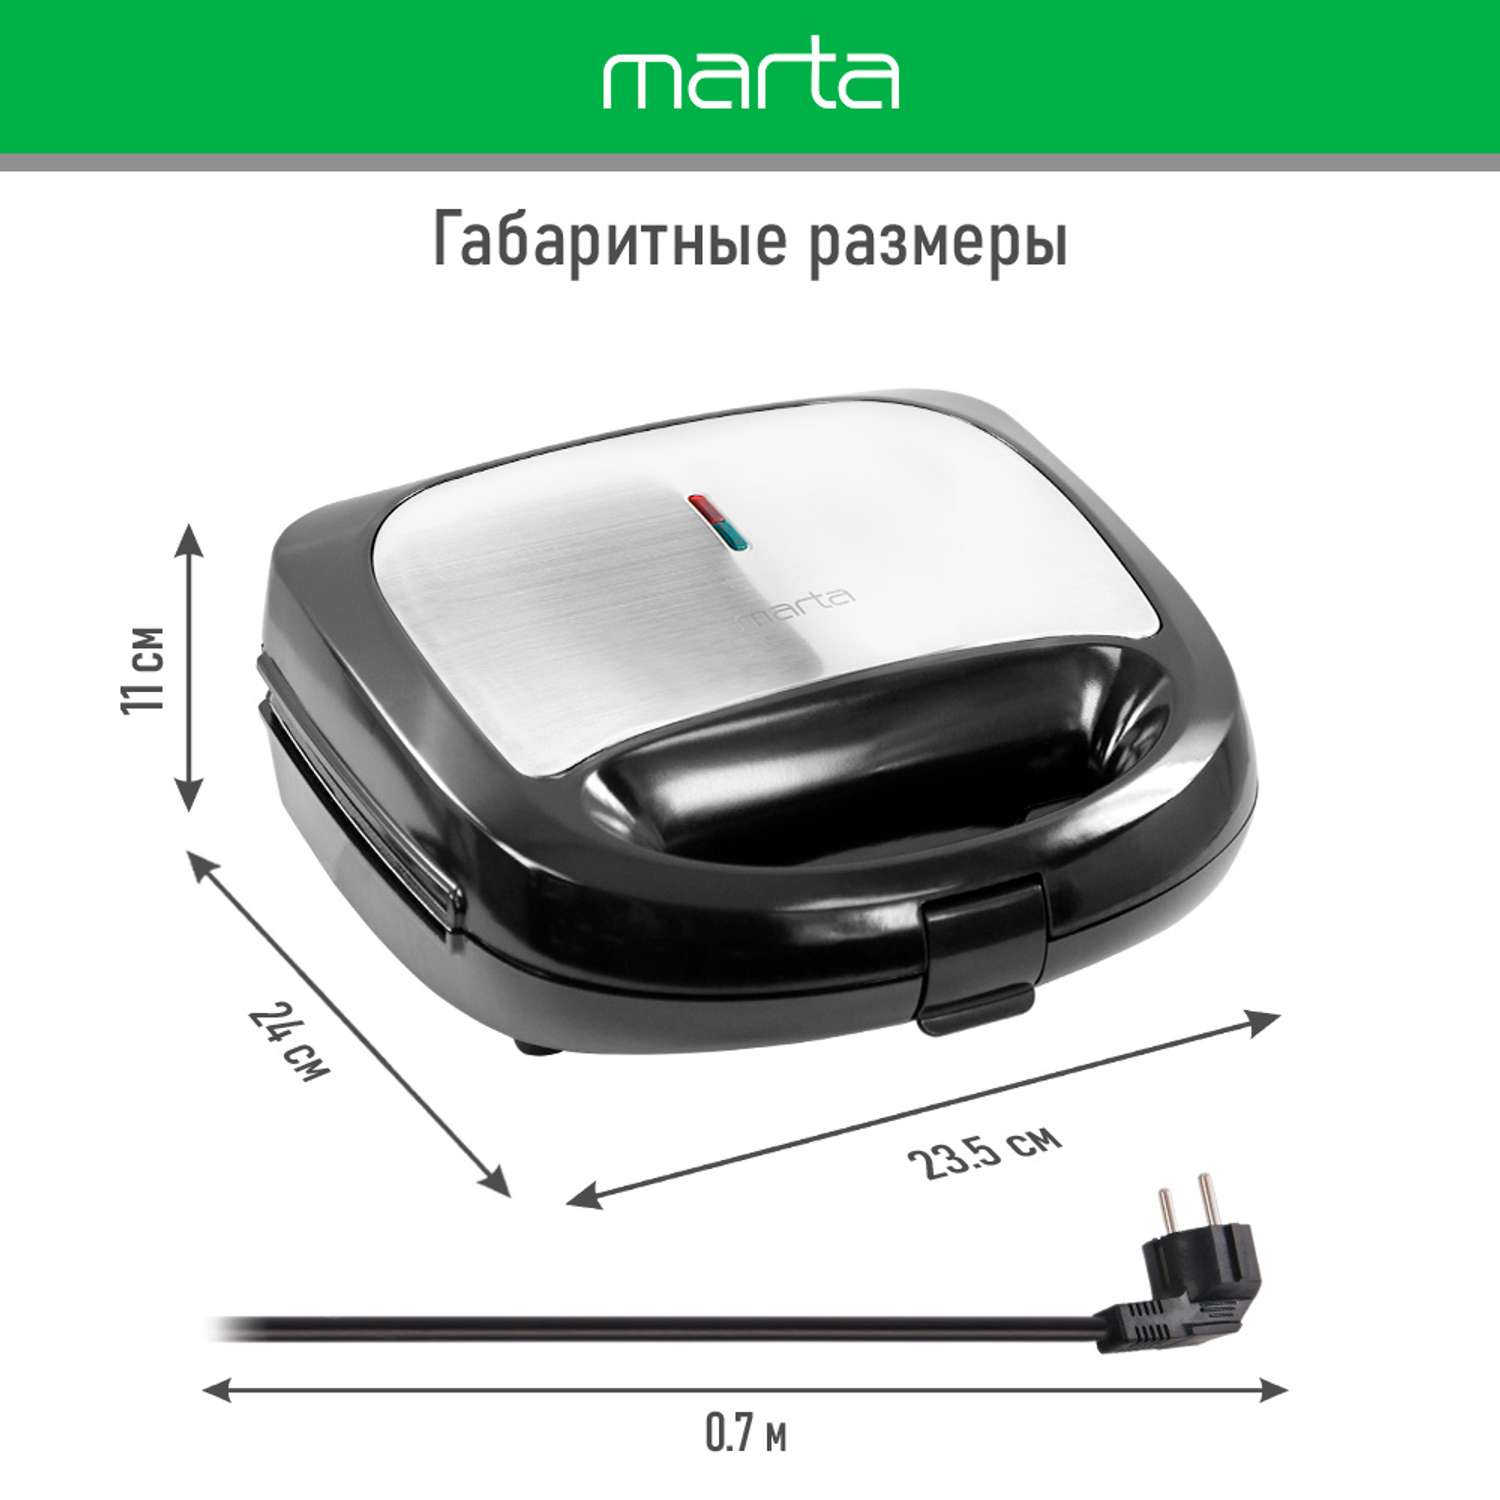 Прибор для выпечки MARTA MT-SM1774G черный жемчуг 8 в 1 со сменными панелями - фото 10